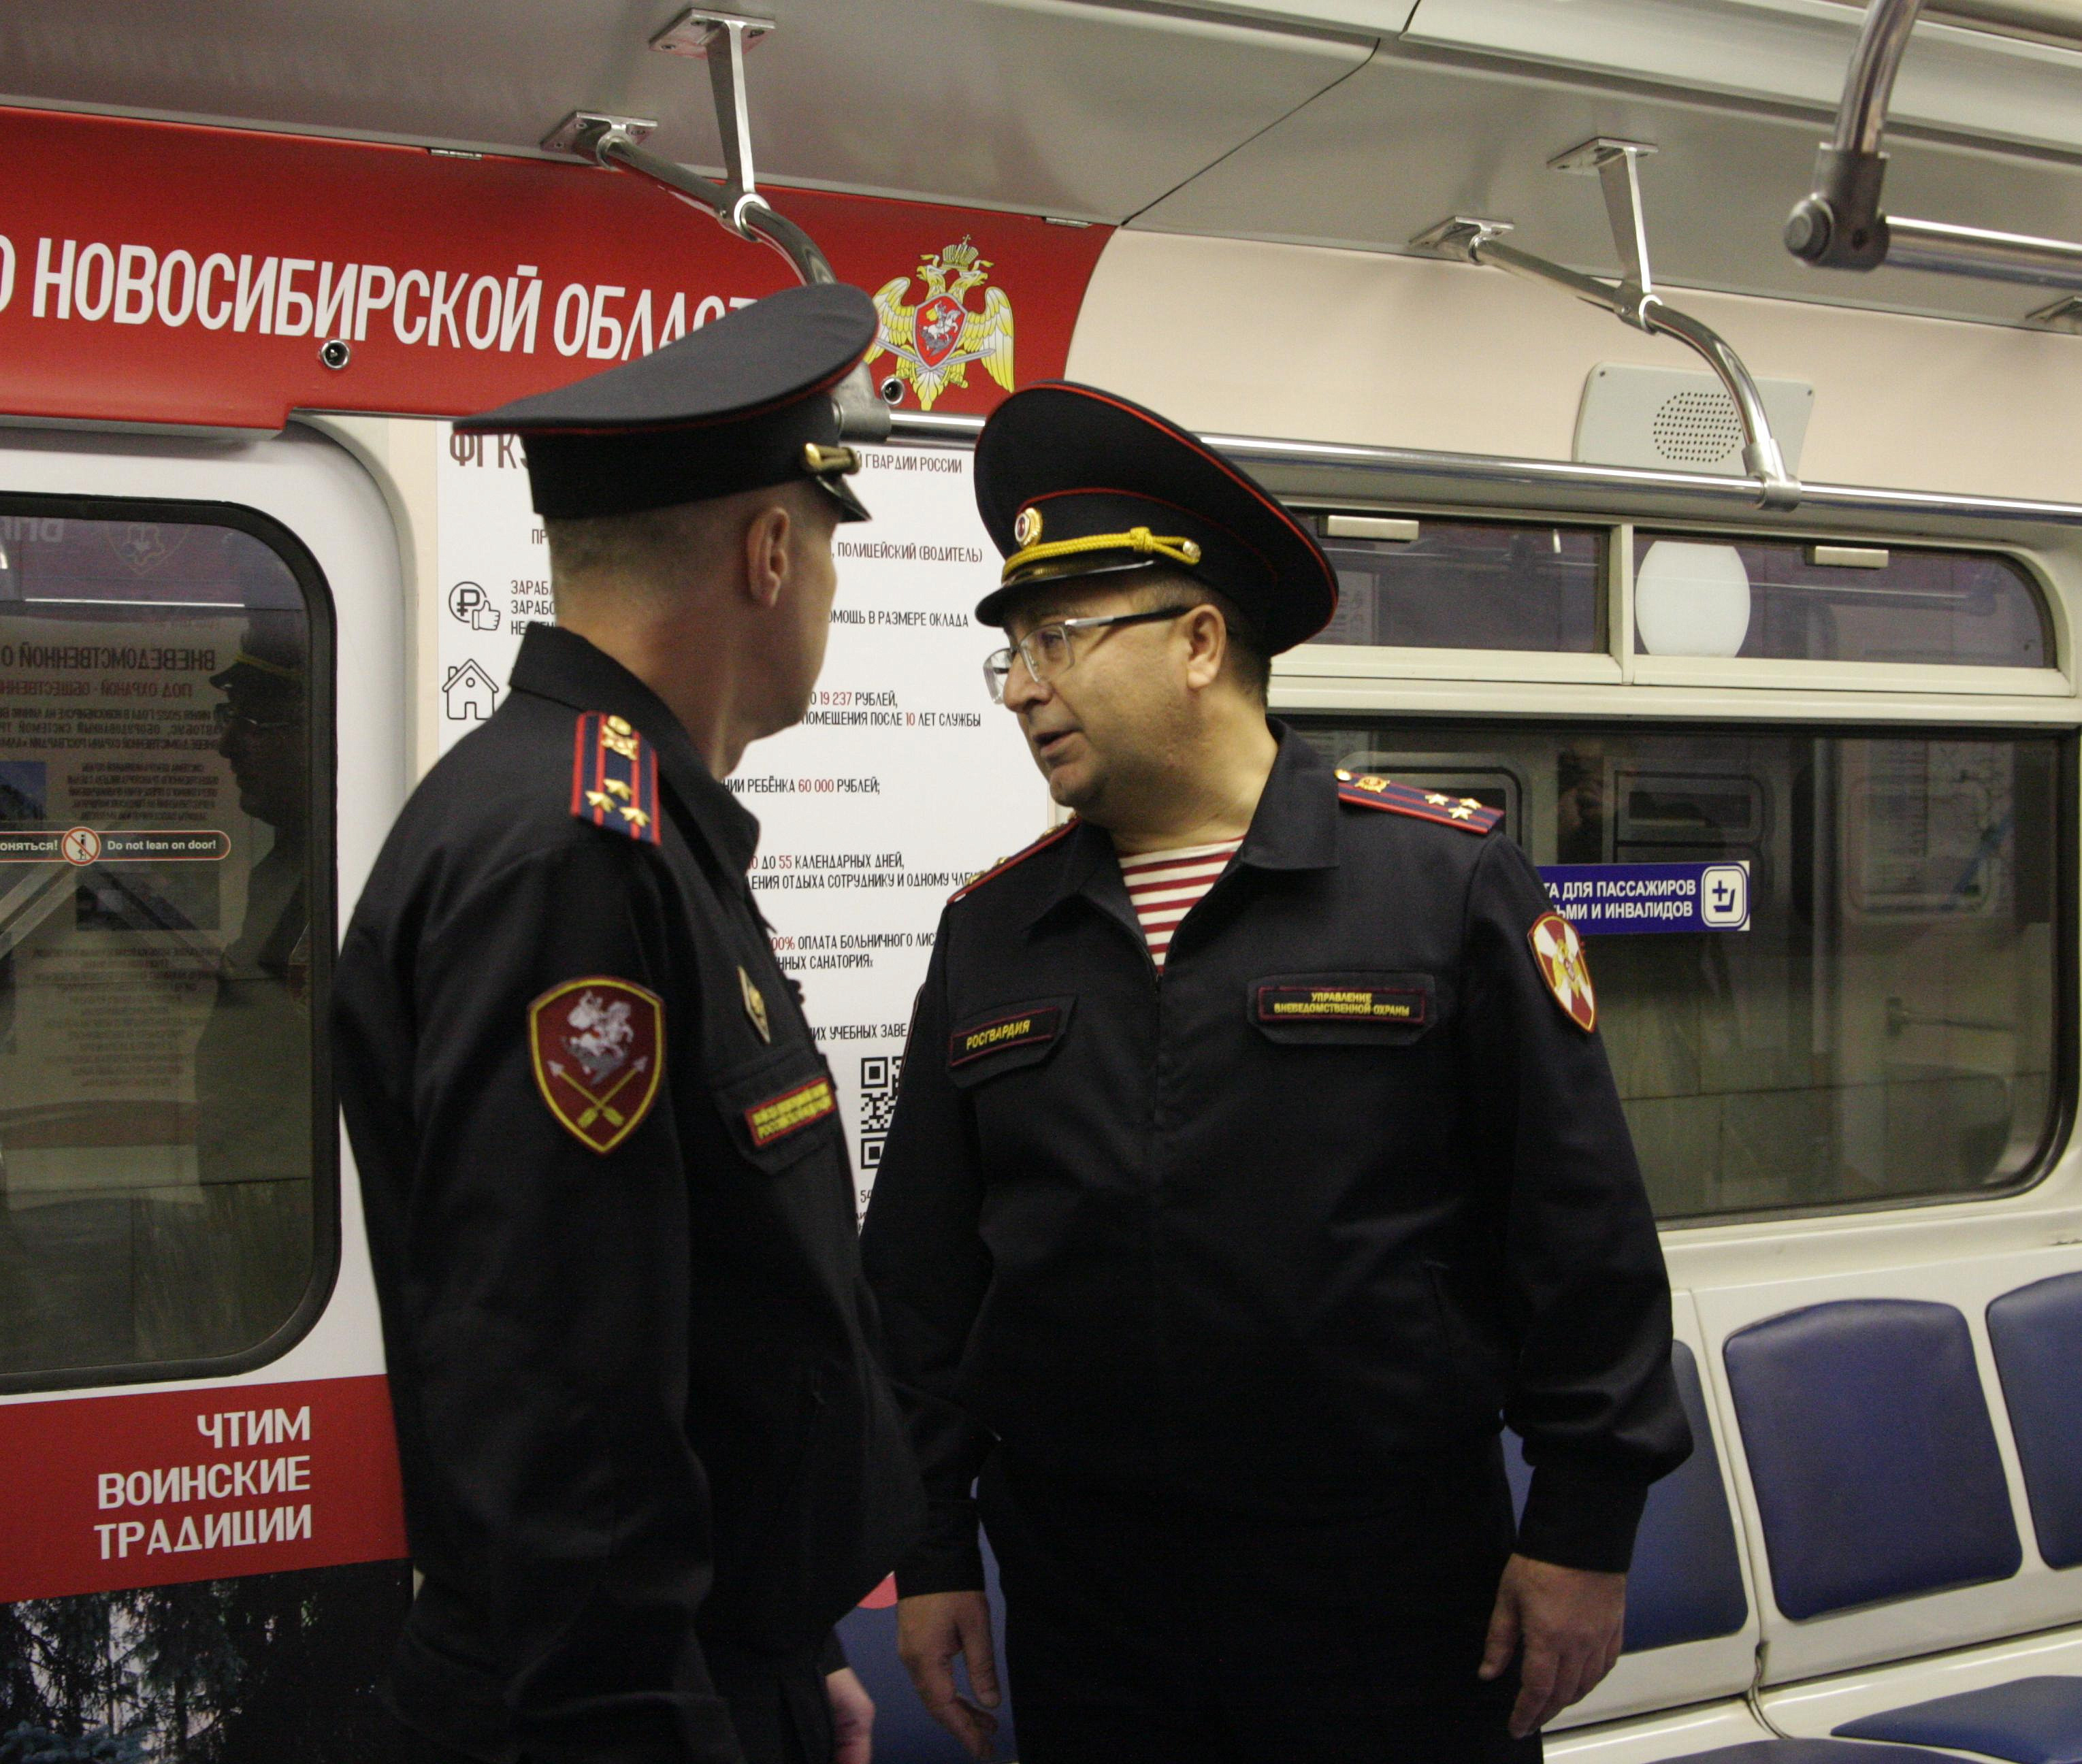 Вагон-музей охраны Росгвардии запустили в метро Новосибирска